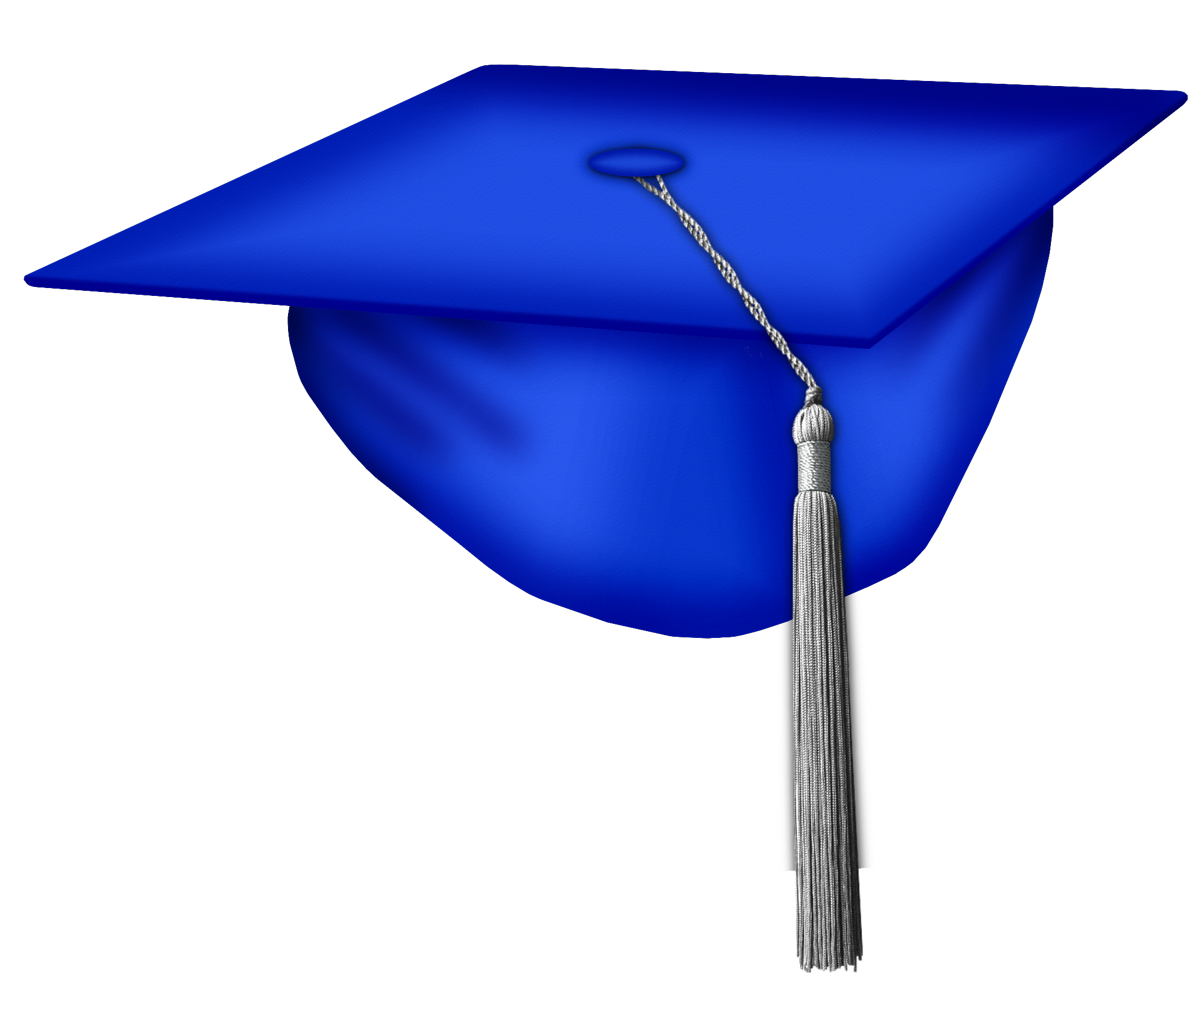 Dark Blue Graduation Cap Kiss - $0.10 , Custom 